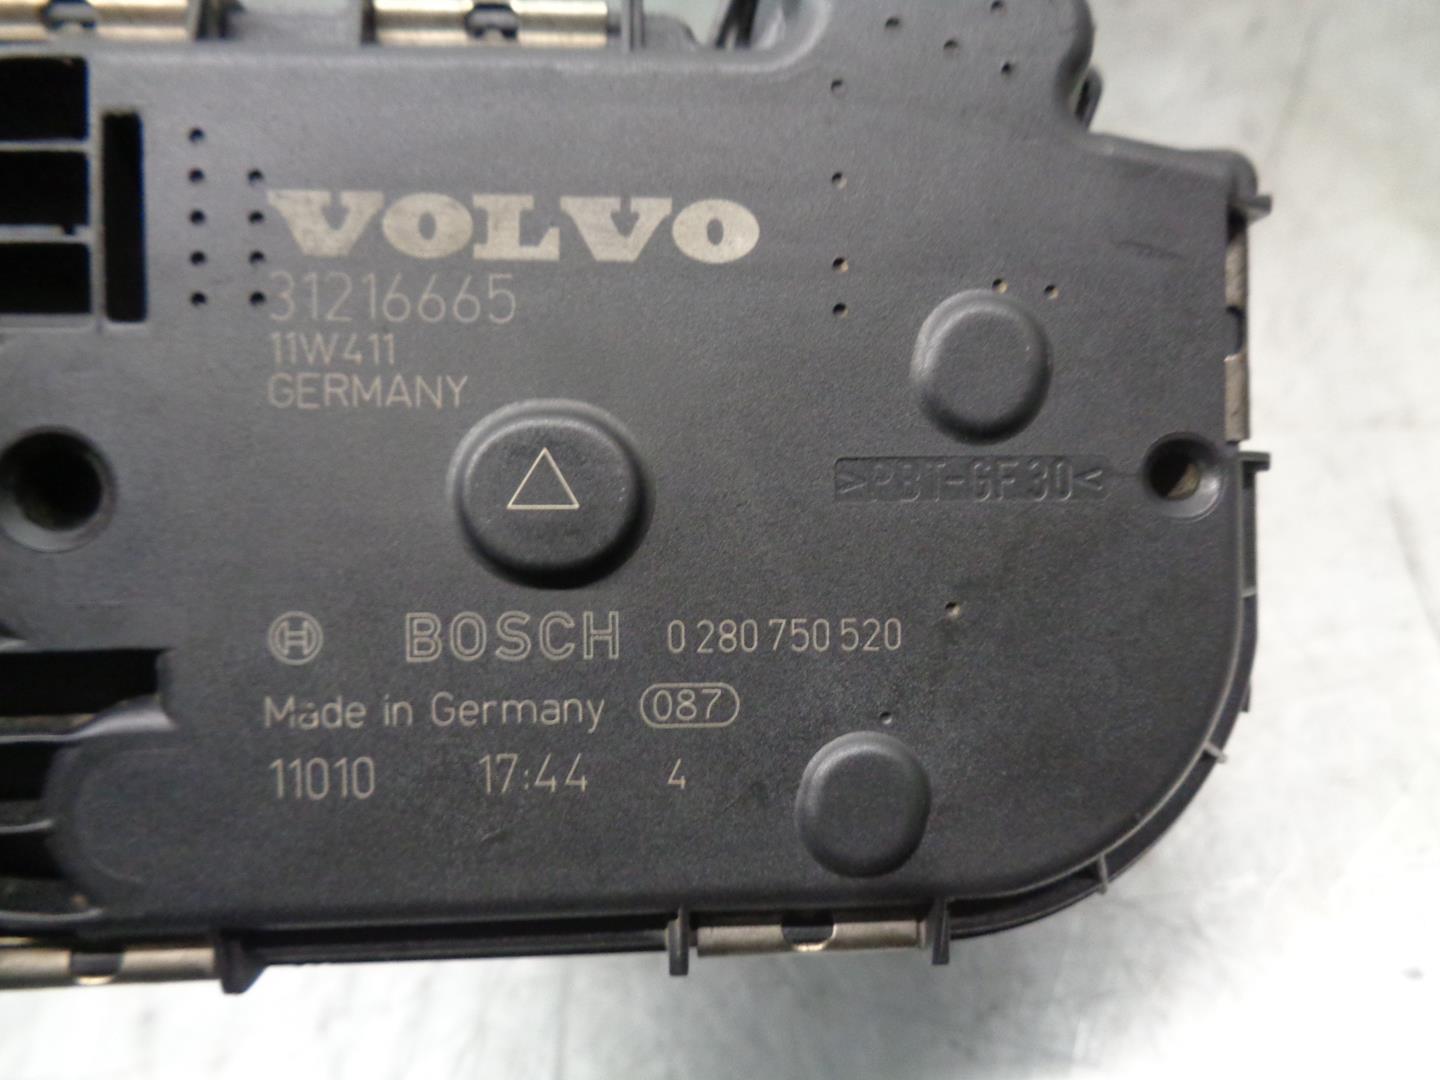 VOLVO V60 1 generation (2010-2020) Throttle Body 31216665, 0280750520 24202122